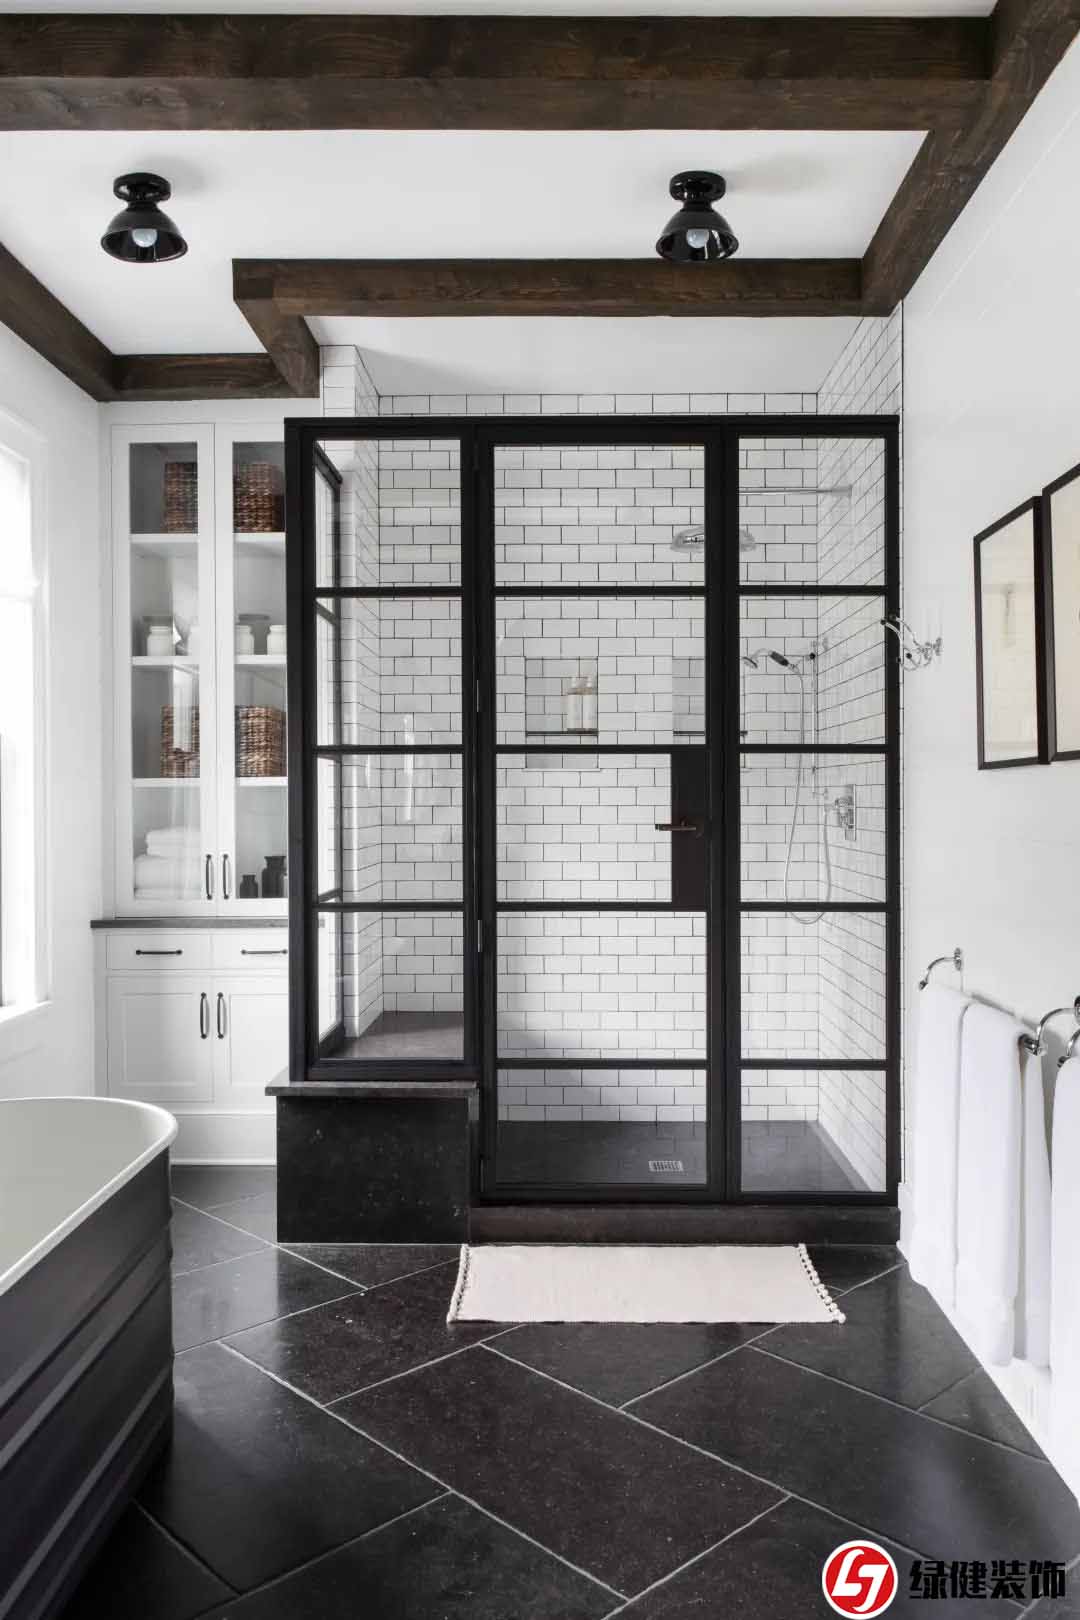 【六安绿健装饰】——玻璃淋浴门设计创意带来浴室新体验